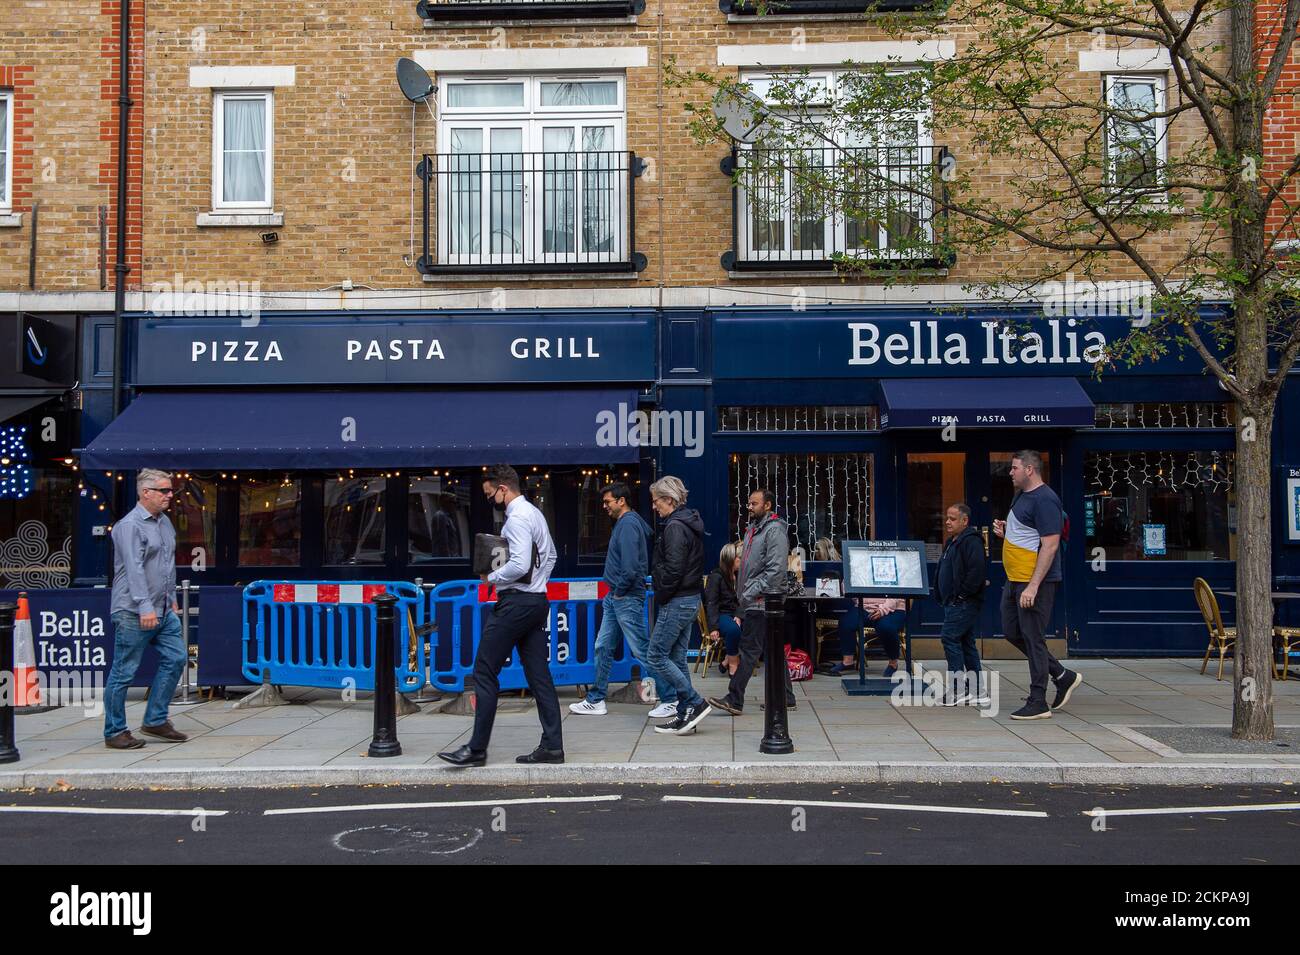 Uxbridge, London Borough of Hillingdon, Großbritannien. September 2020. Das Bella Italia Restaurant in Uxbridge wurde nach der Schließung des Coronavirus wieder eröffnet. Quelle: Maureen McLean/Alamy Stockfoto